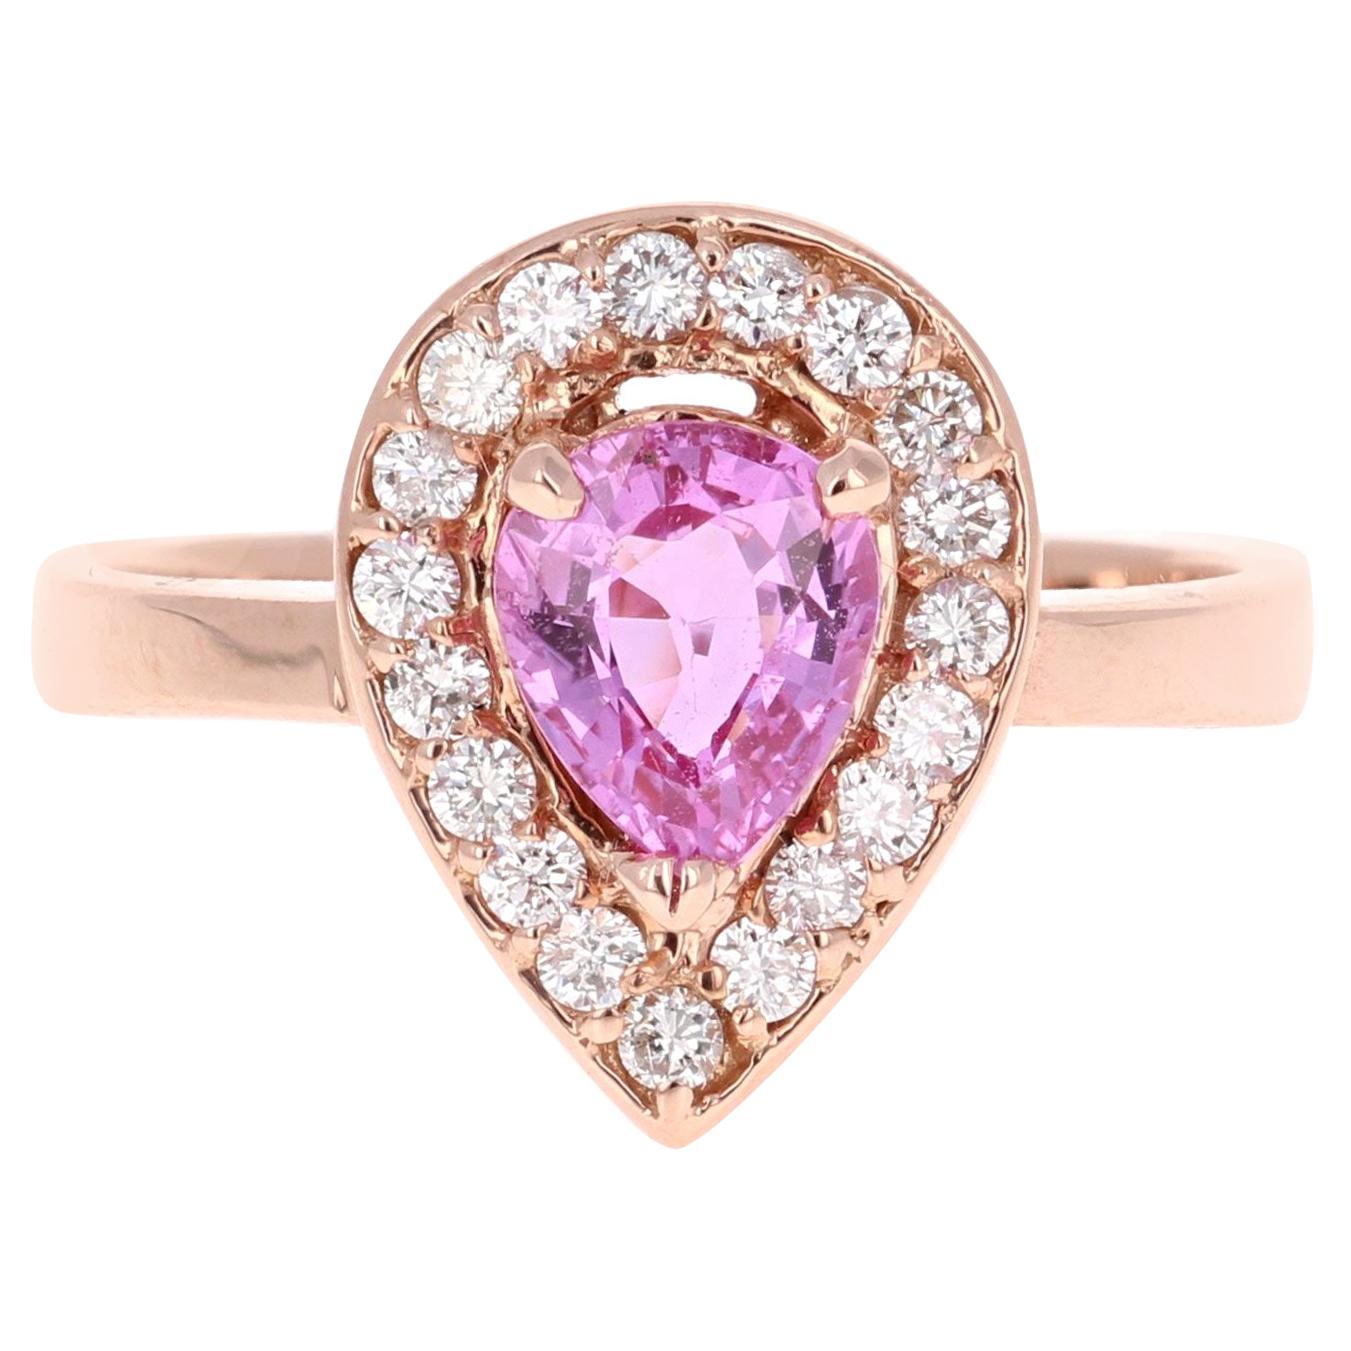 1.47 Carat Pink Sapphire Diamond 14 Karat Rose Gold Engagement Ring